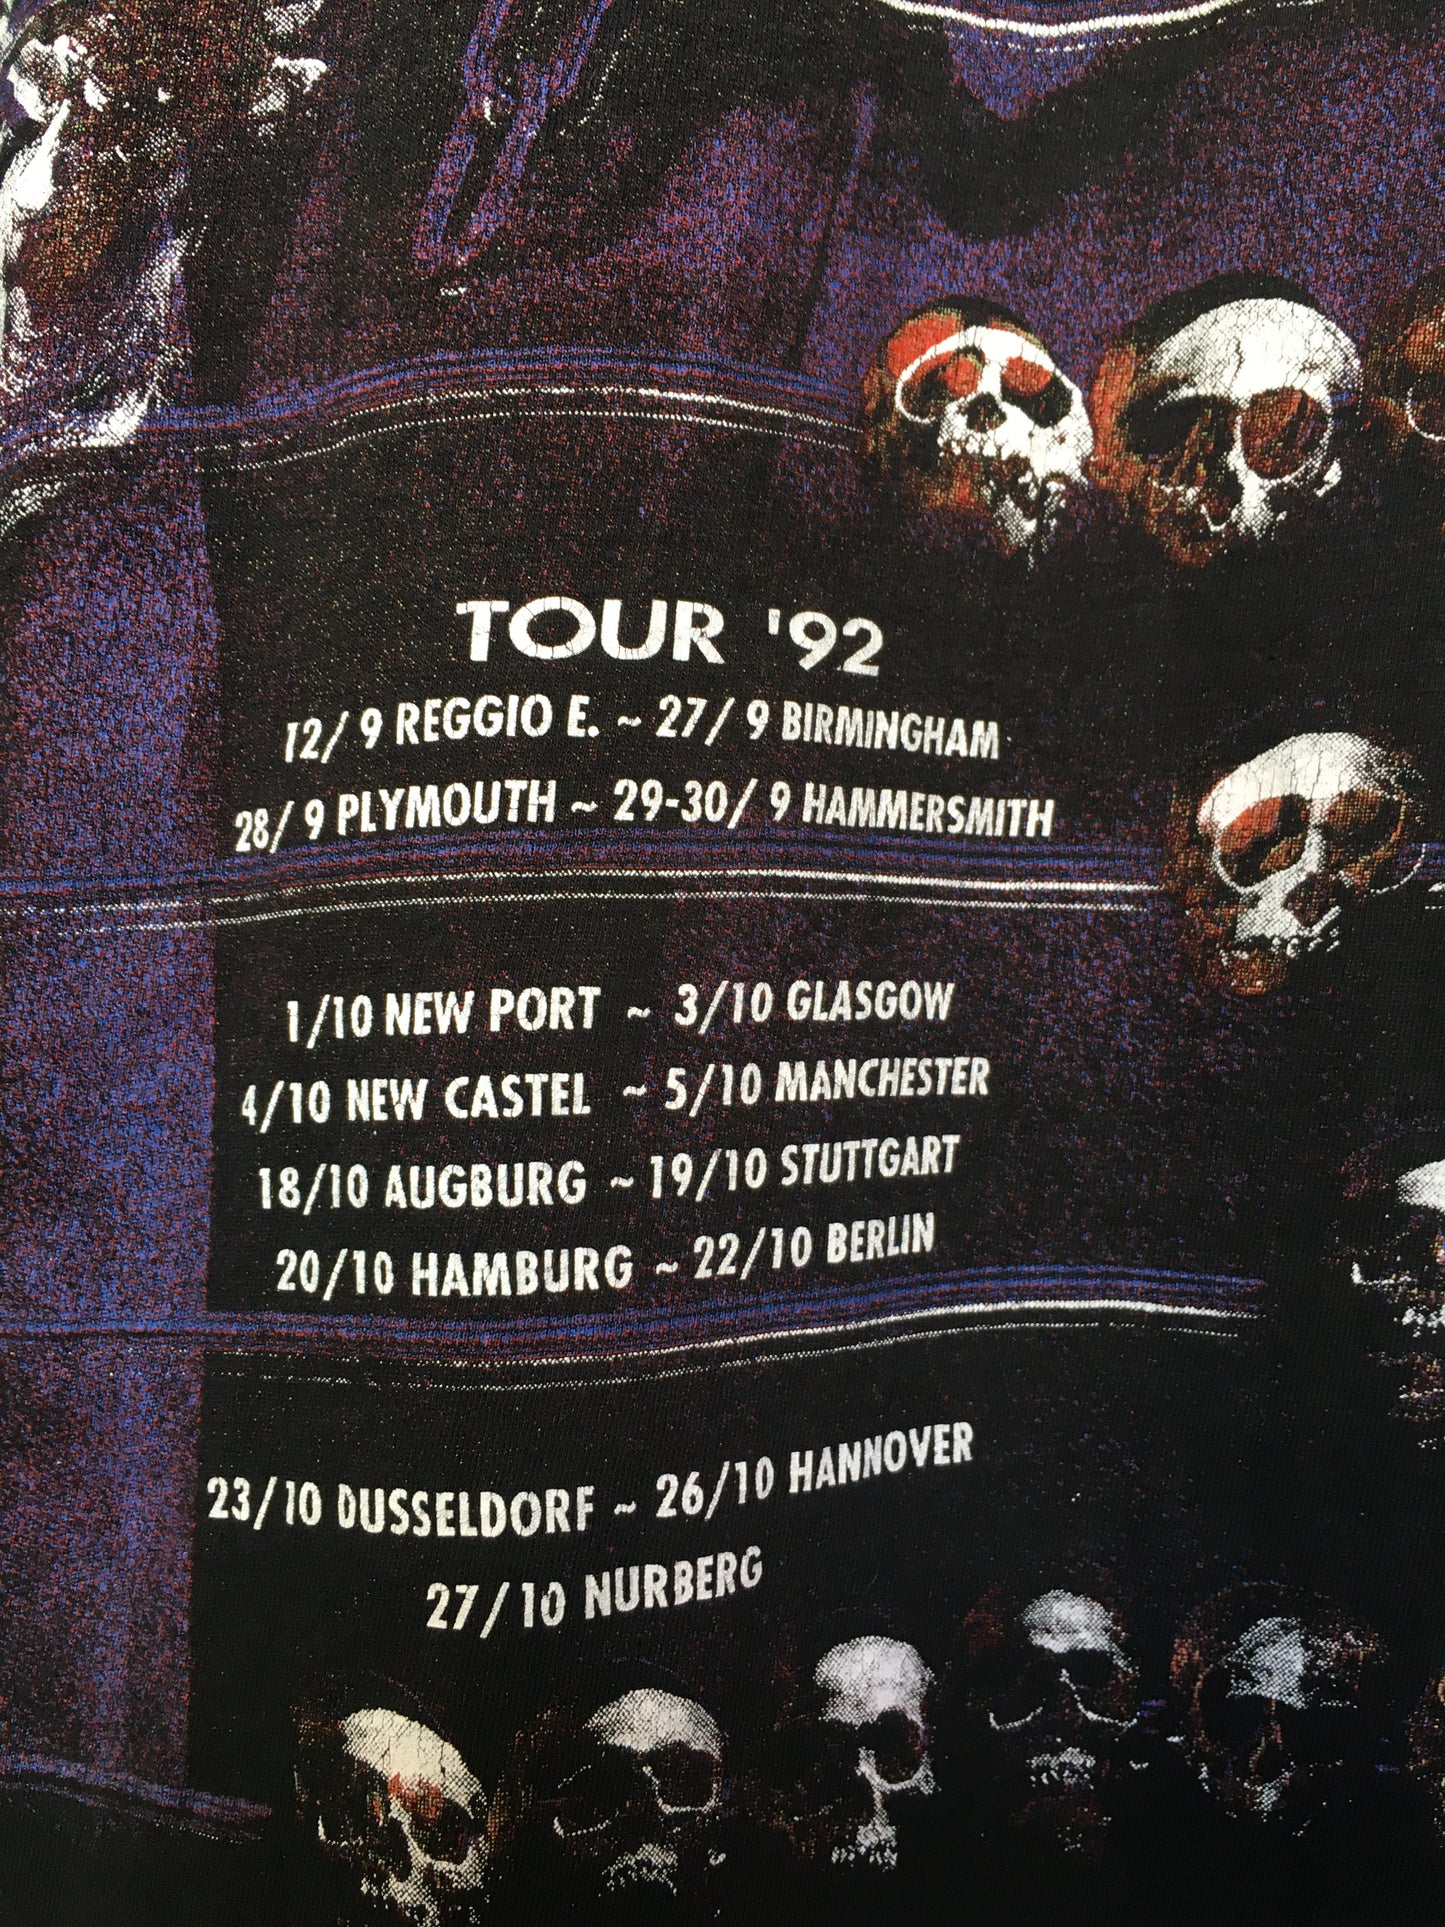 1992 Megadeth Countdown to Extinction Tour Shirt